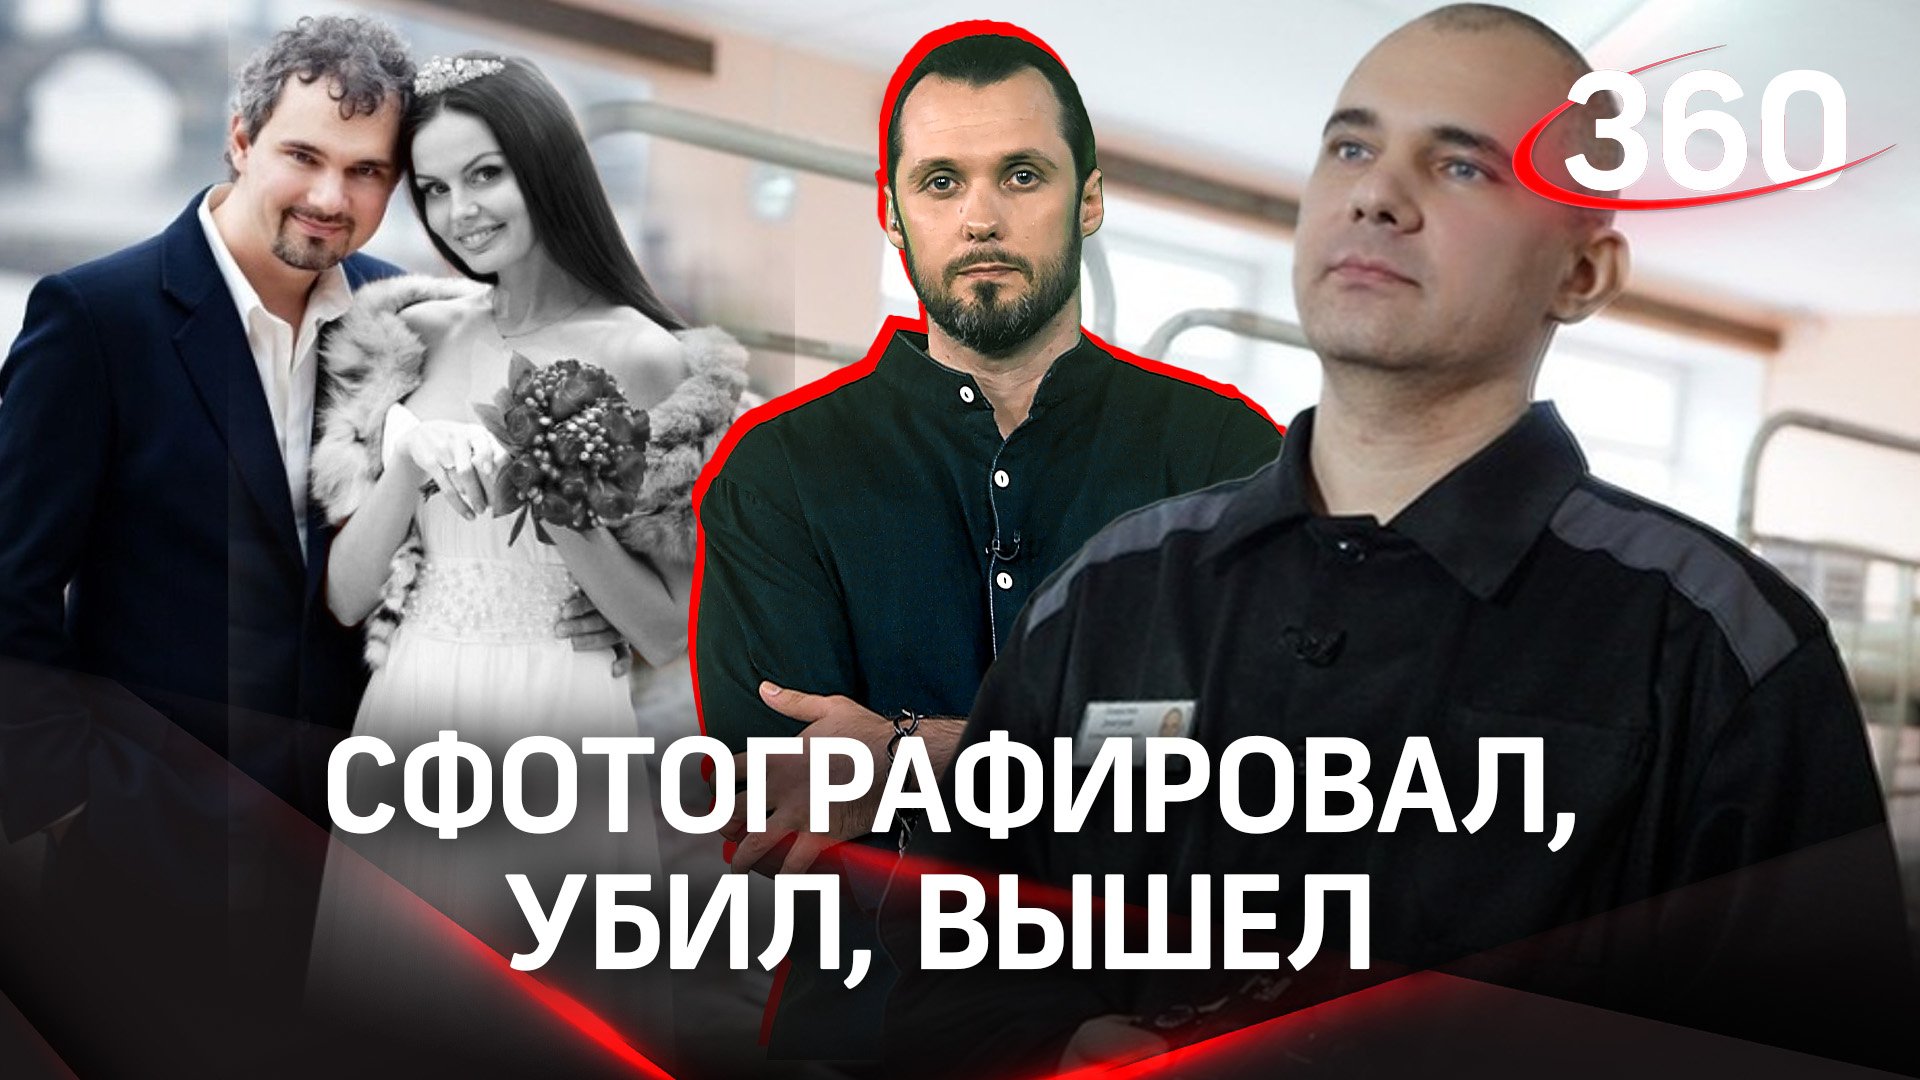 «Фотограф-убийца на свободе»: Сегодня Дмитрия Лошагина досрочно выпустили из тюрьмы